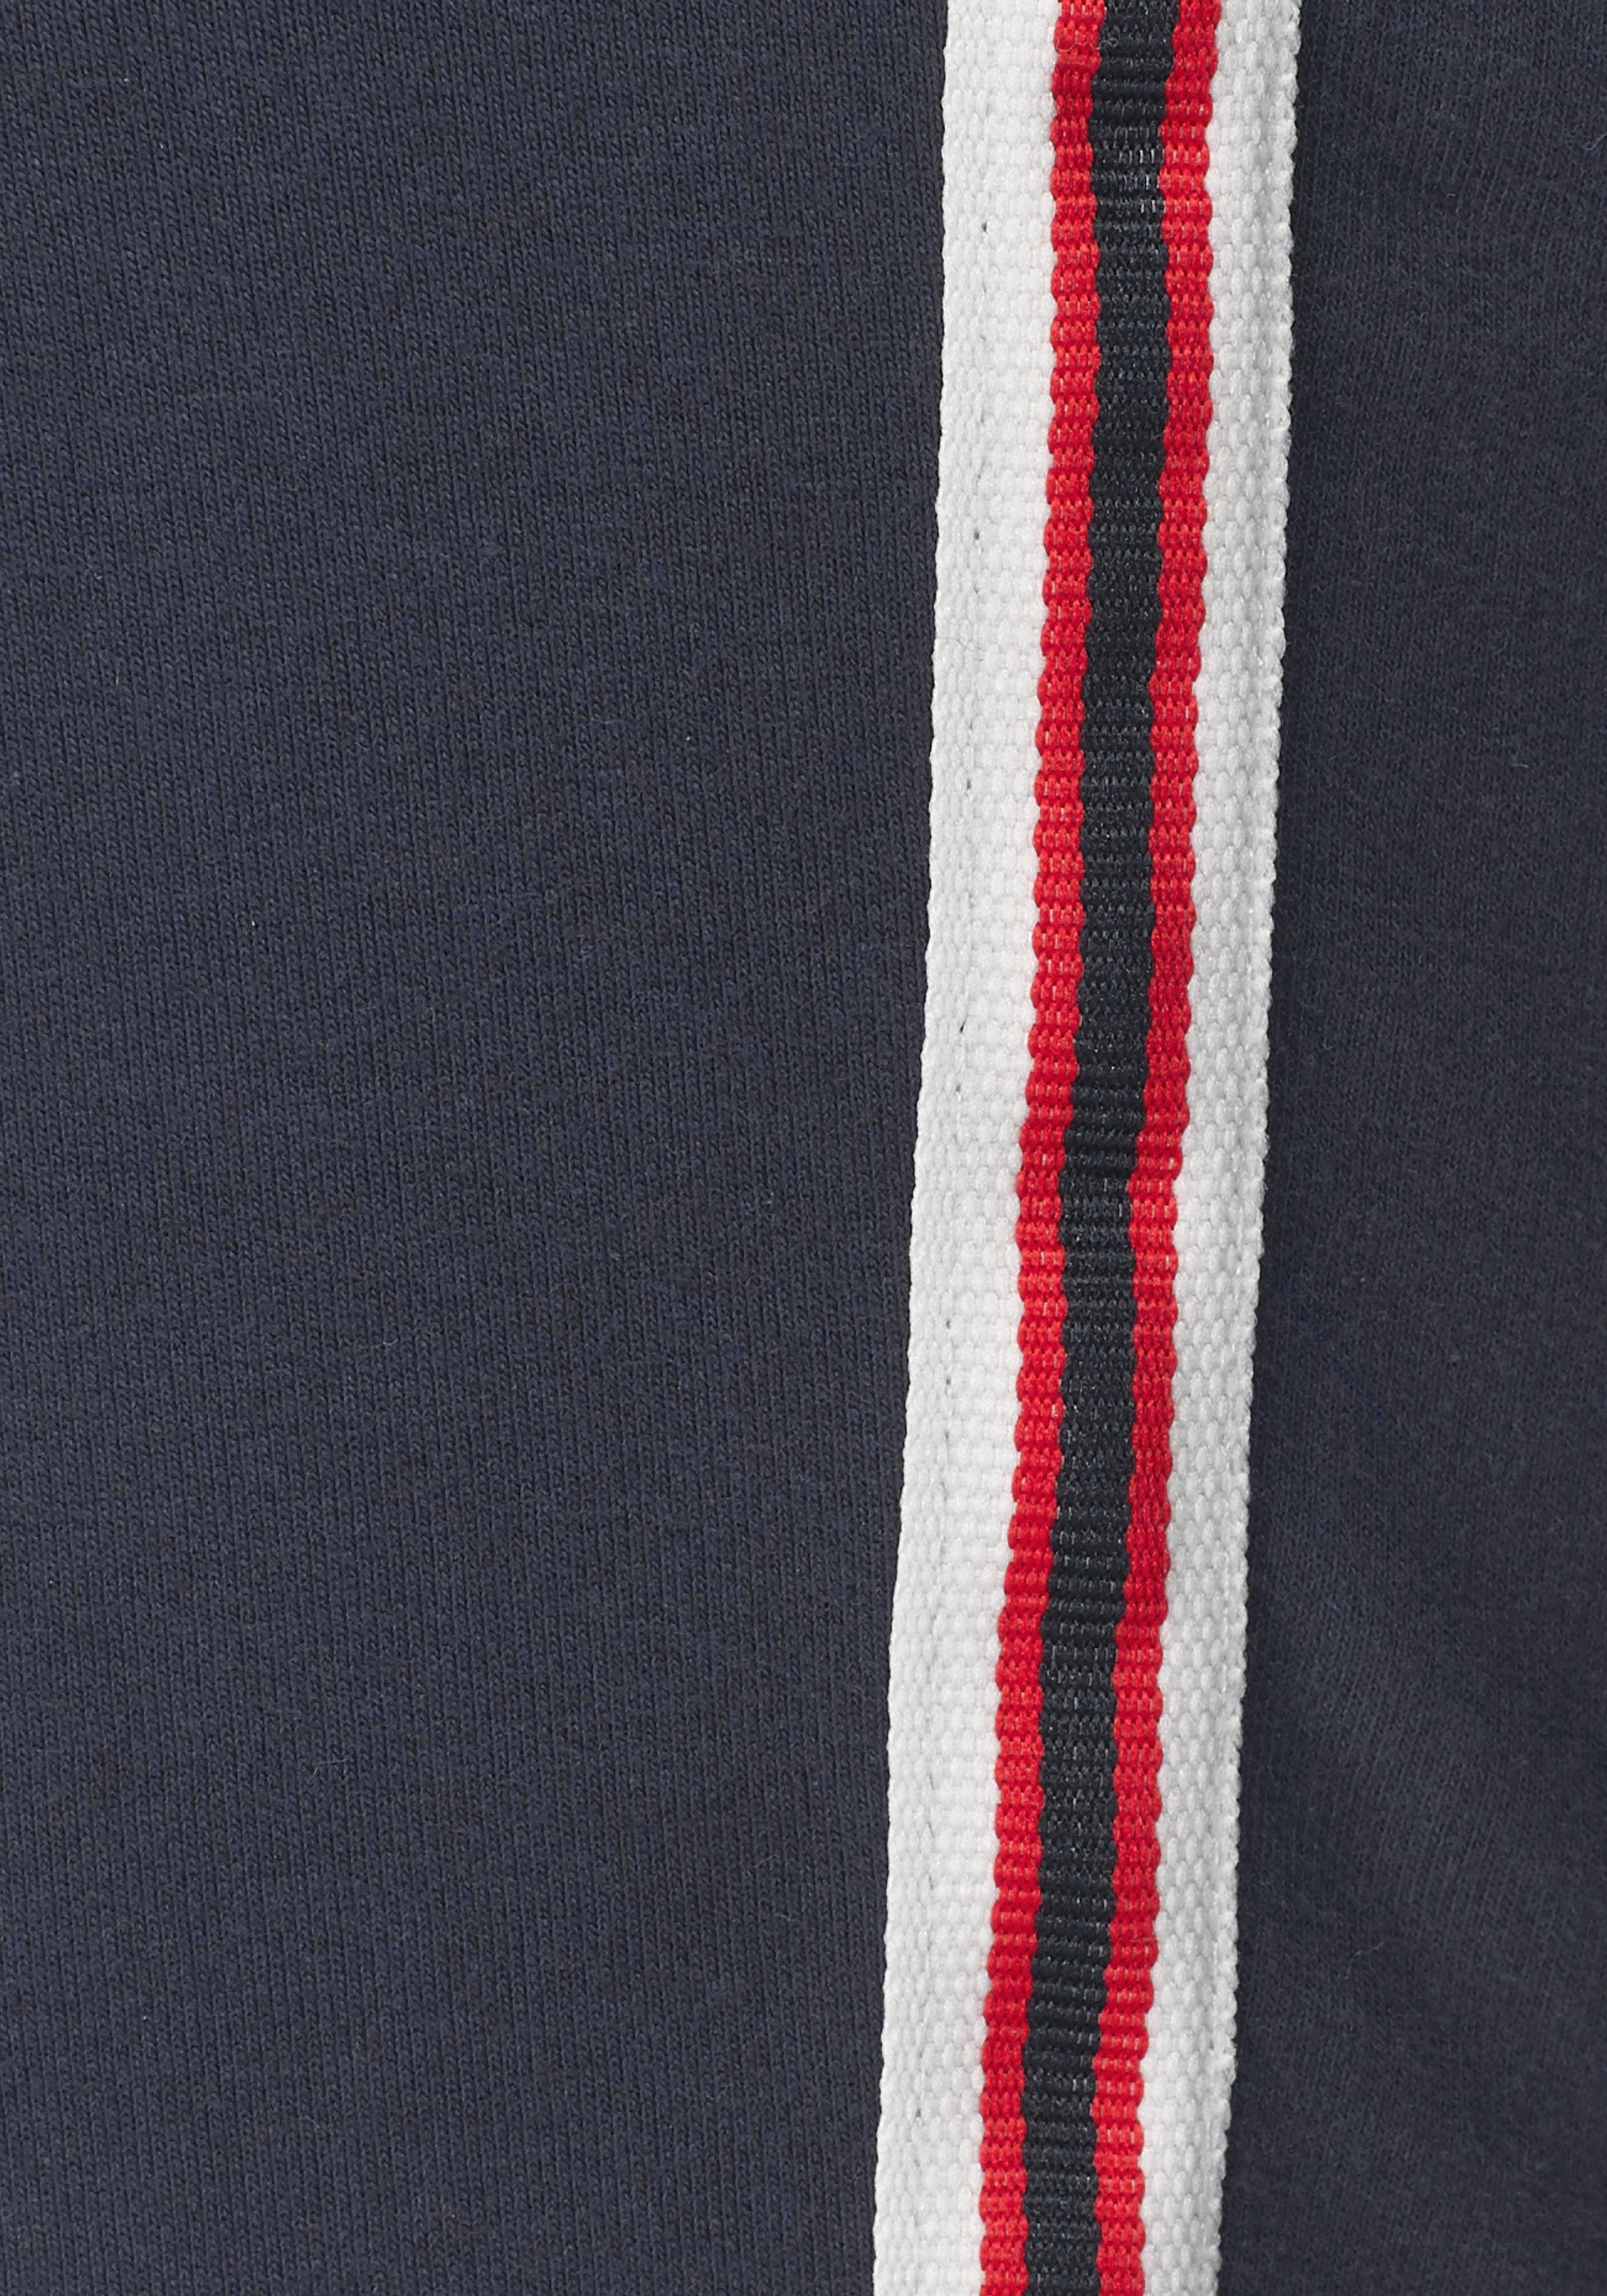 KangaROOS mit seitlichem, aufgesetztem marine Jogger Pants Galon-Streifen